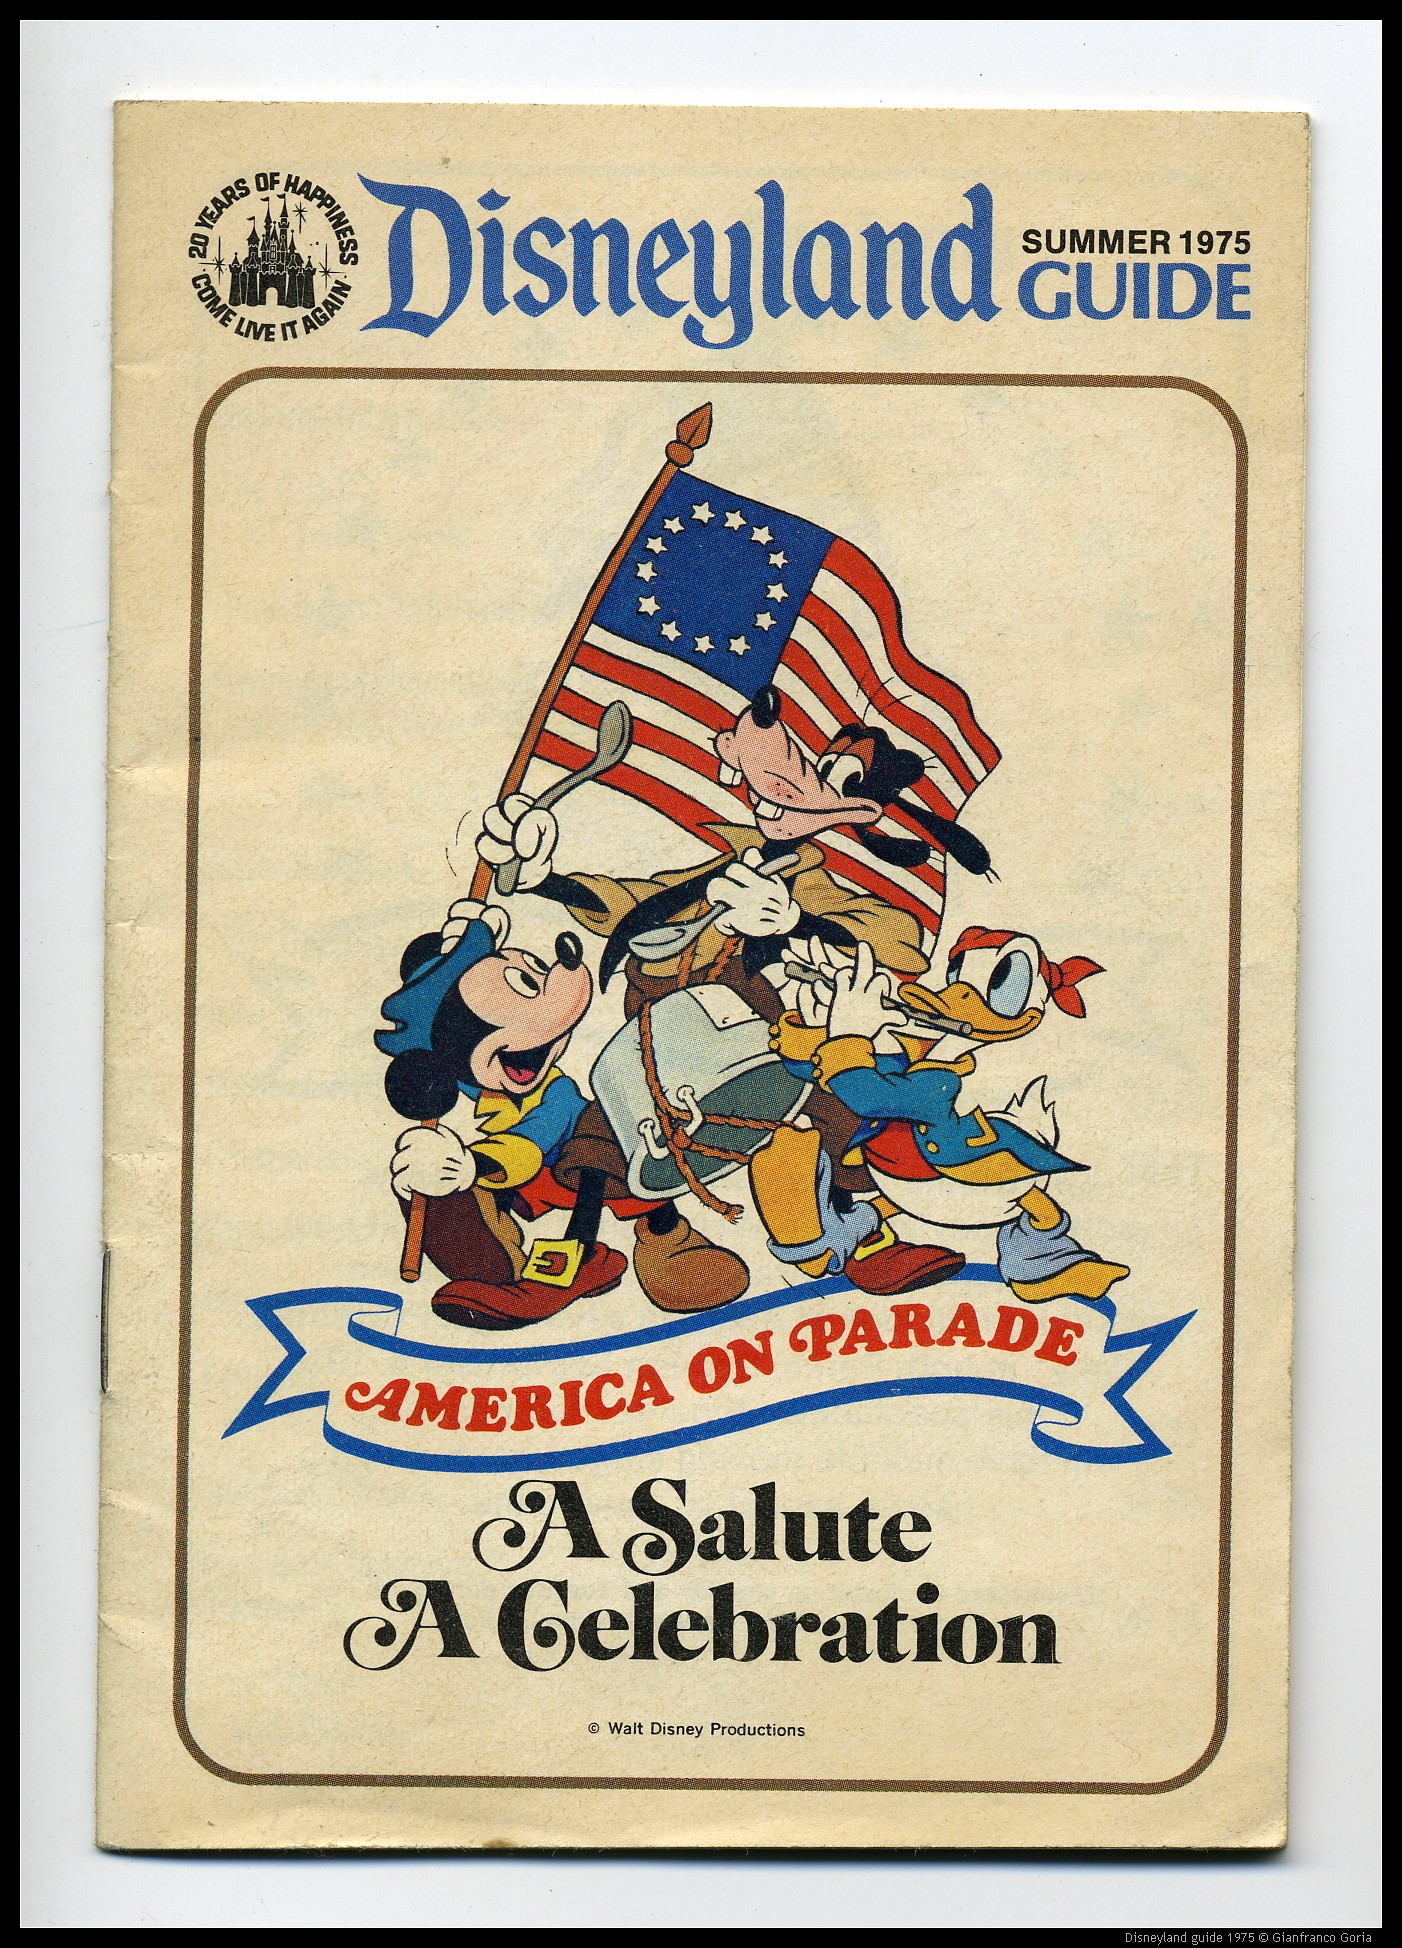 Disneyland guide 1975.jpg